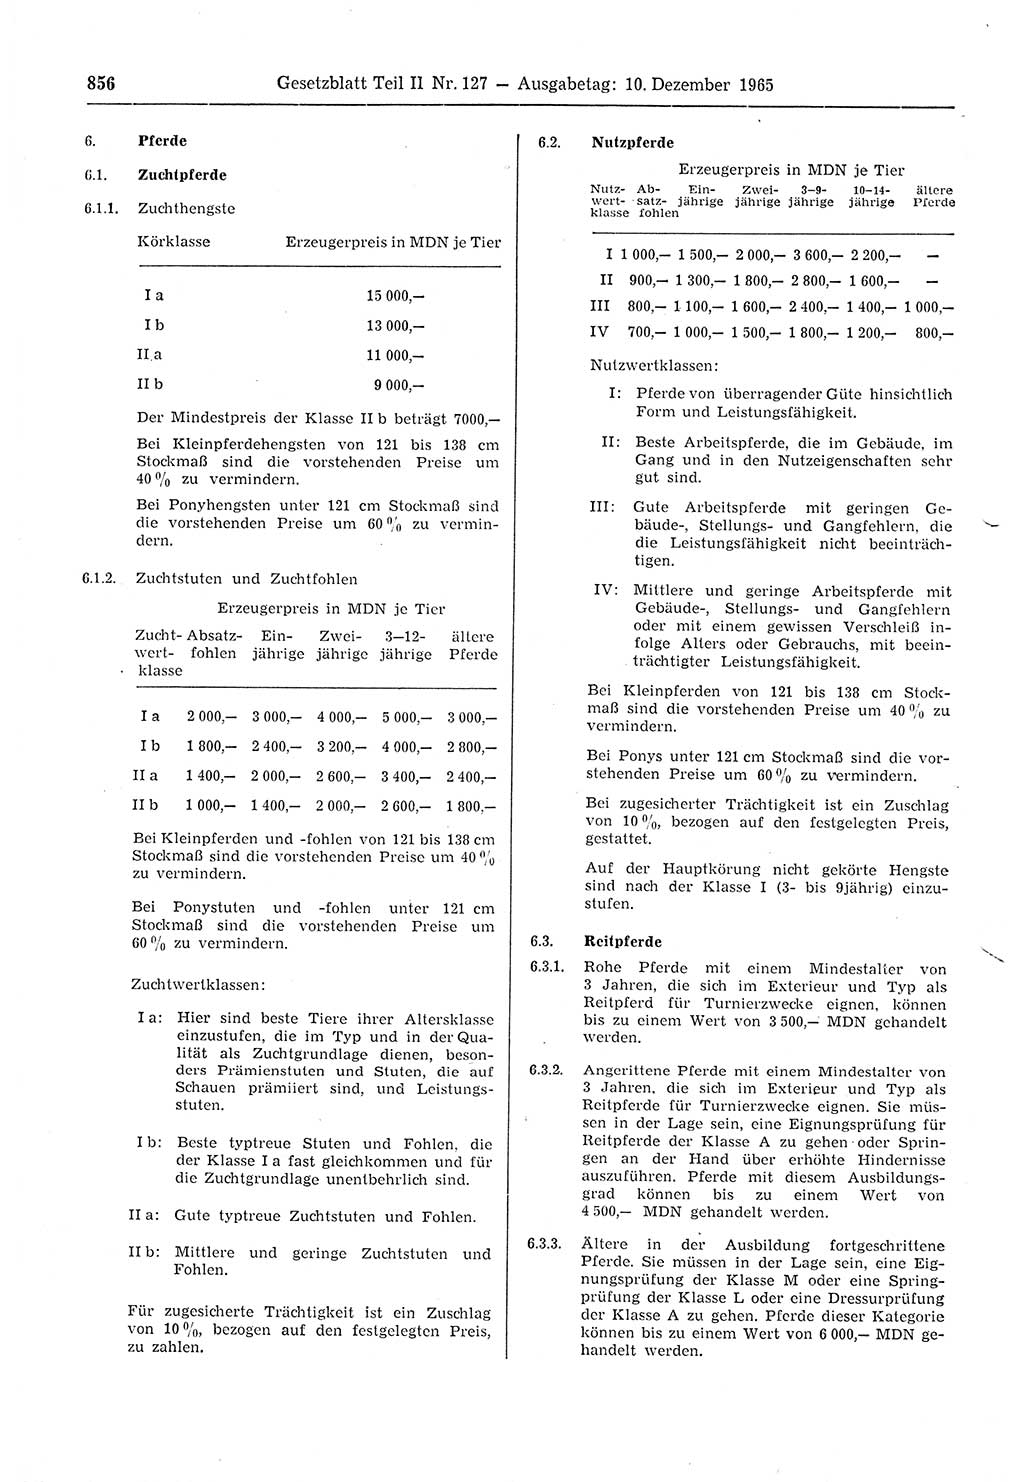 Gesetzblatt (GBl.) der Deutschen Demokratischen Republik (DDR) Teil ⅠⅠ 1965, Seite 856 (GBl. DDR ⅠⅠ 1965, S. 856)